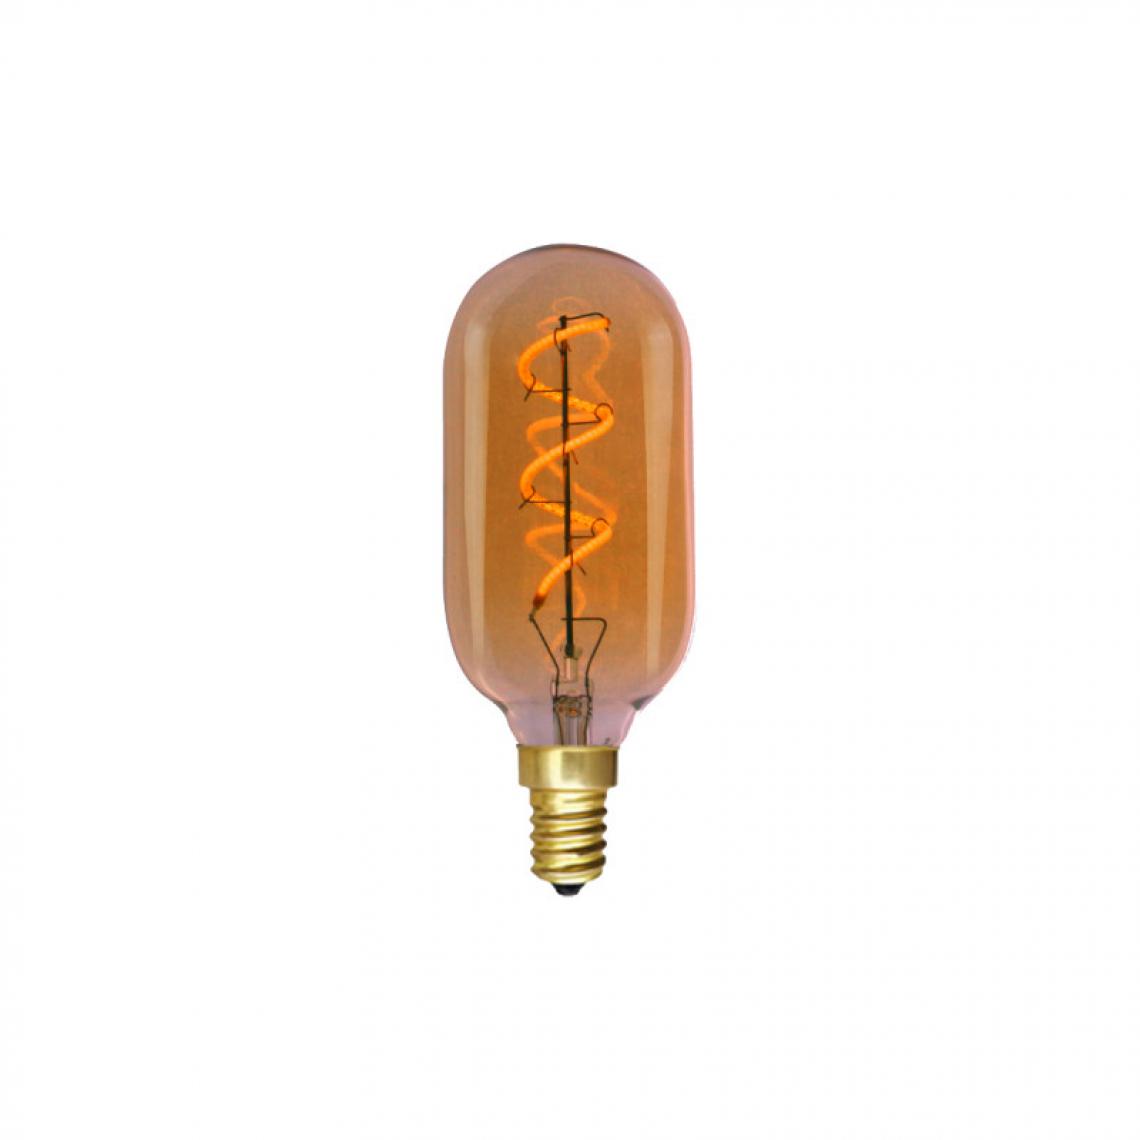 Xxcell - Ampoule LED tube à filament XXCELL - 3 W - 130 lumens - 2700 K - E14 - Ampoules LED